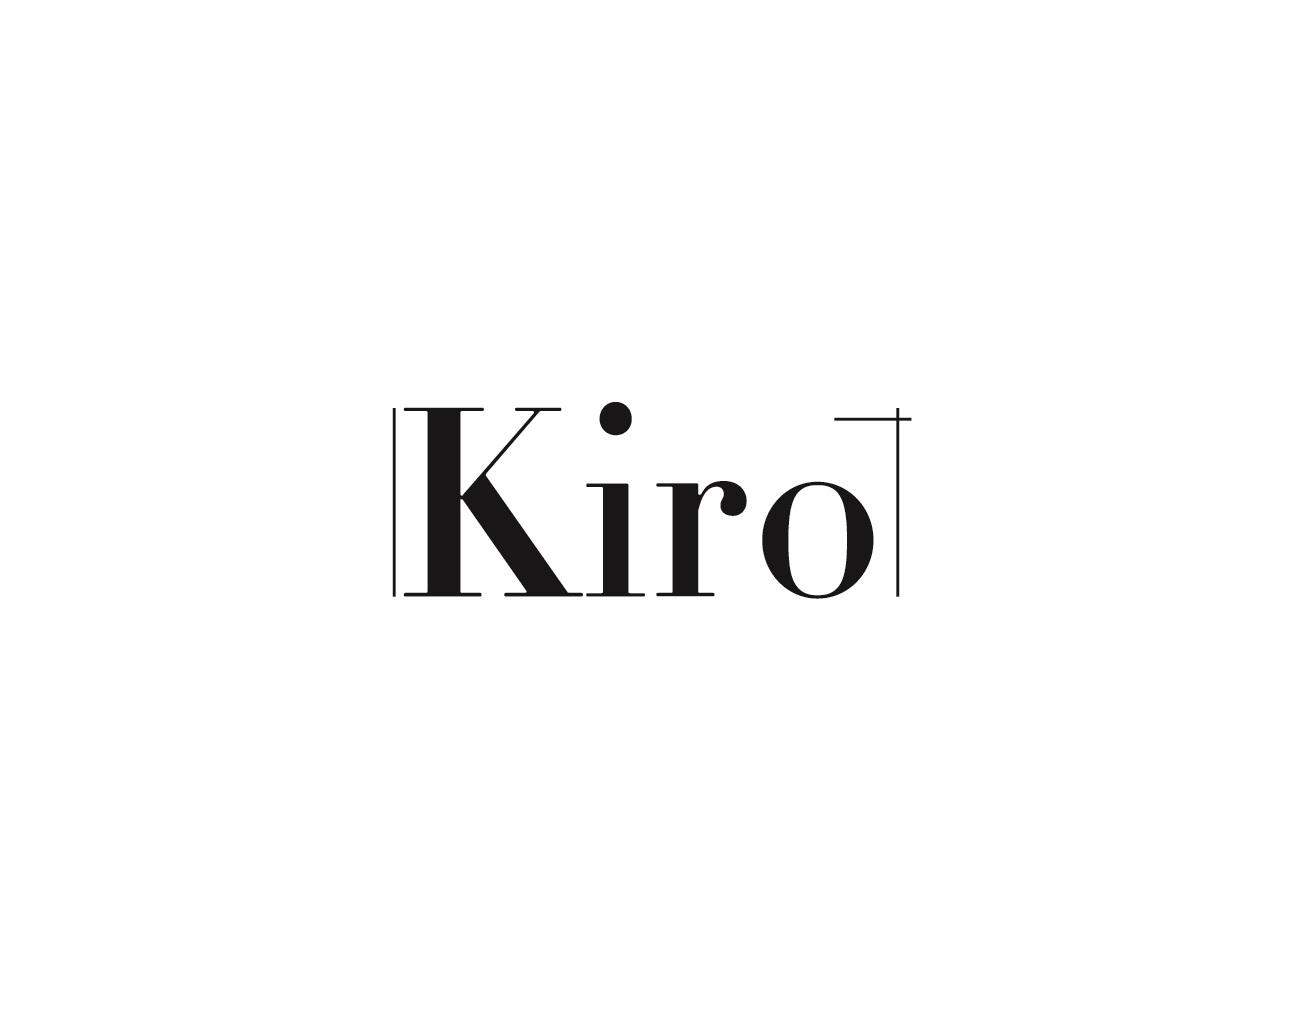 KIRO